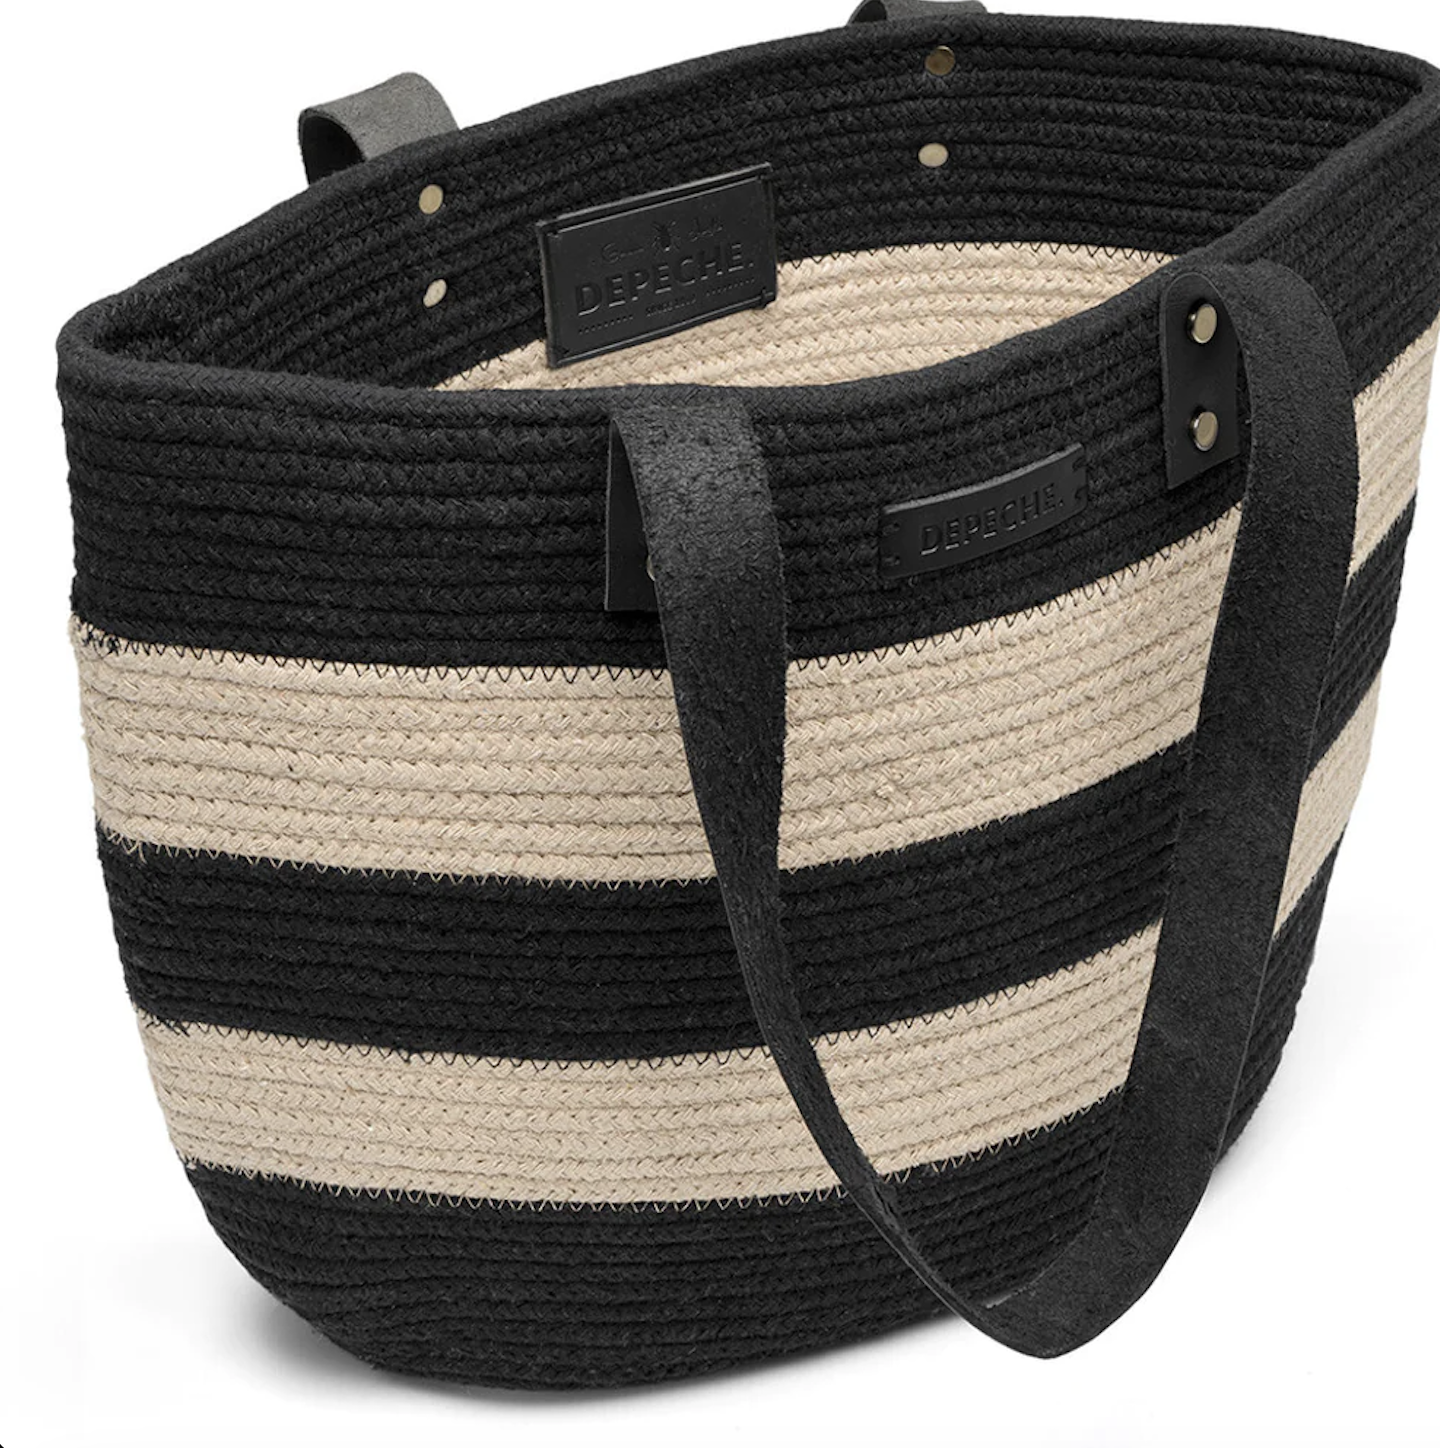 Strandväska eller shoppingbag i rep med läderhandtag, från Depeche.